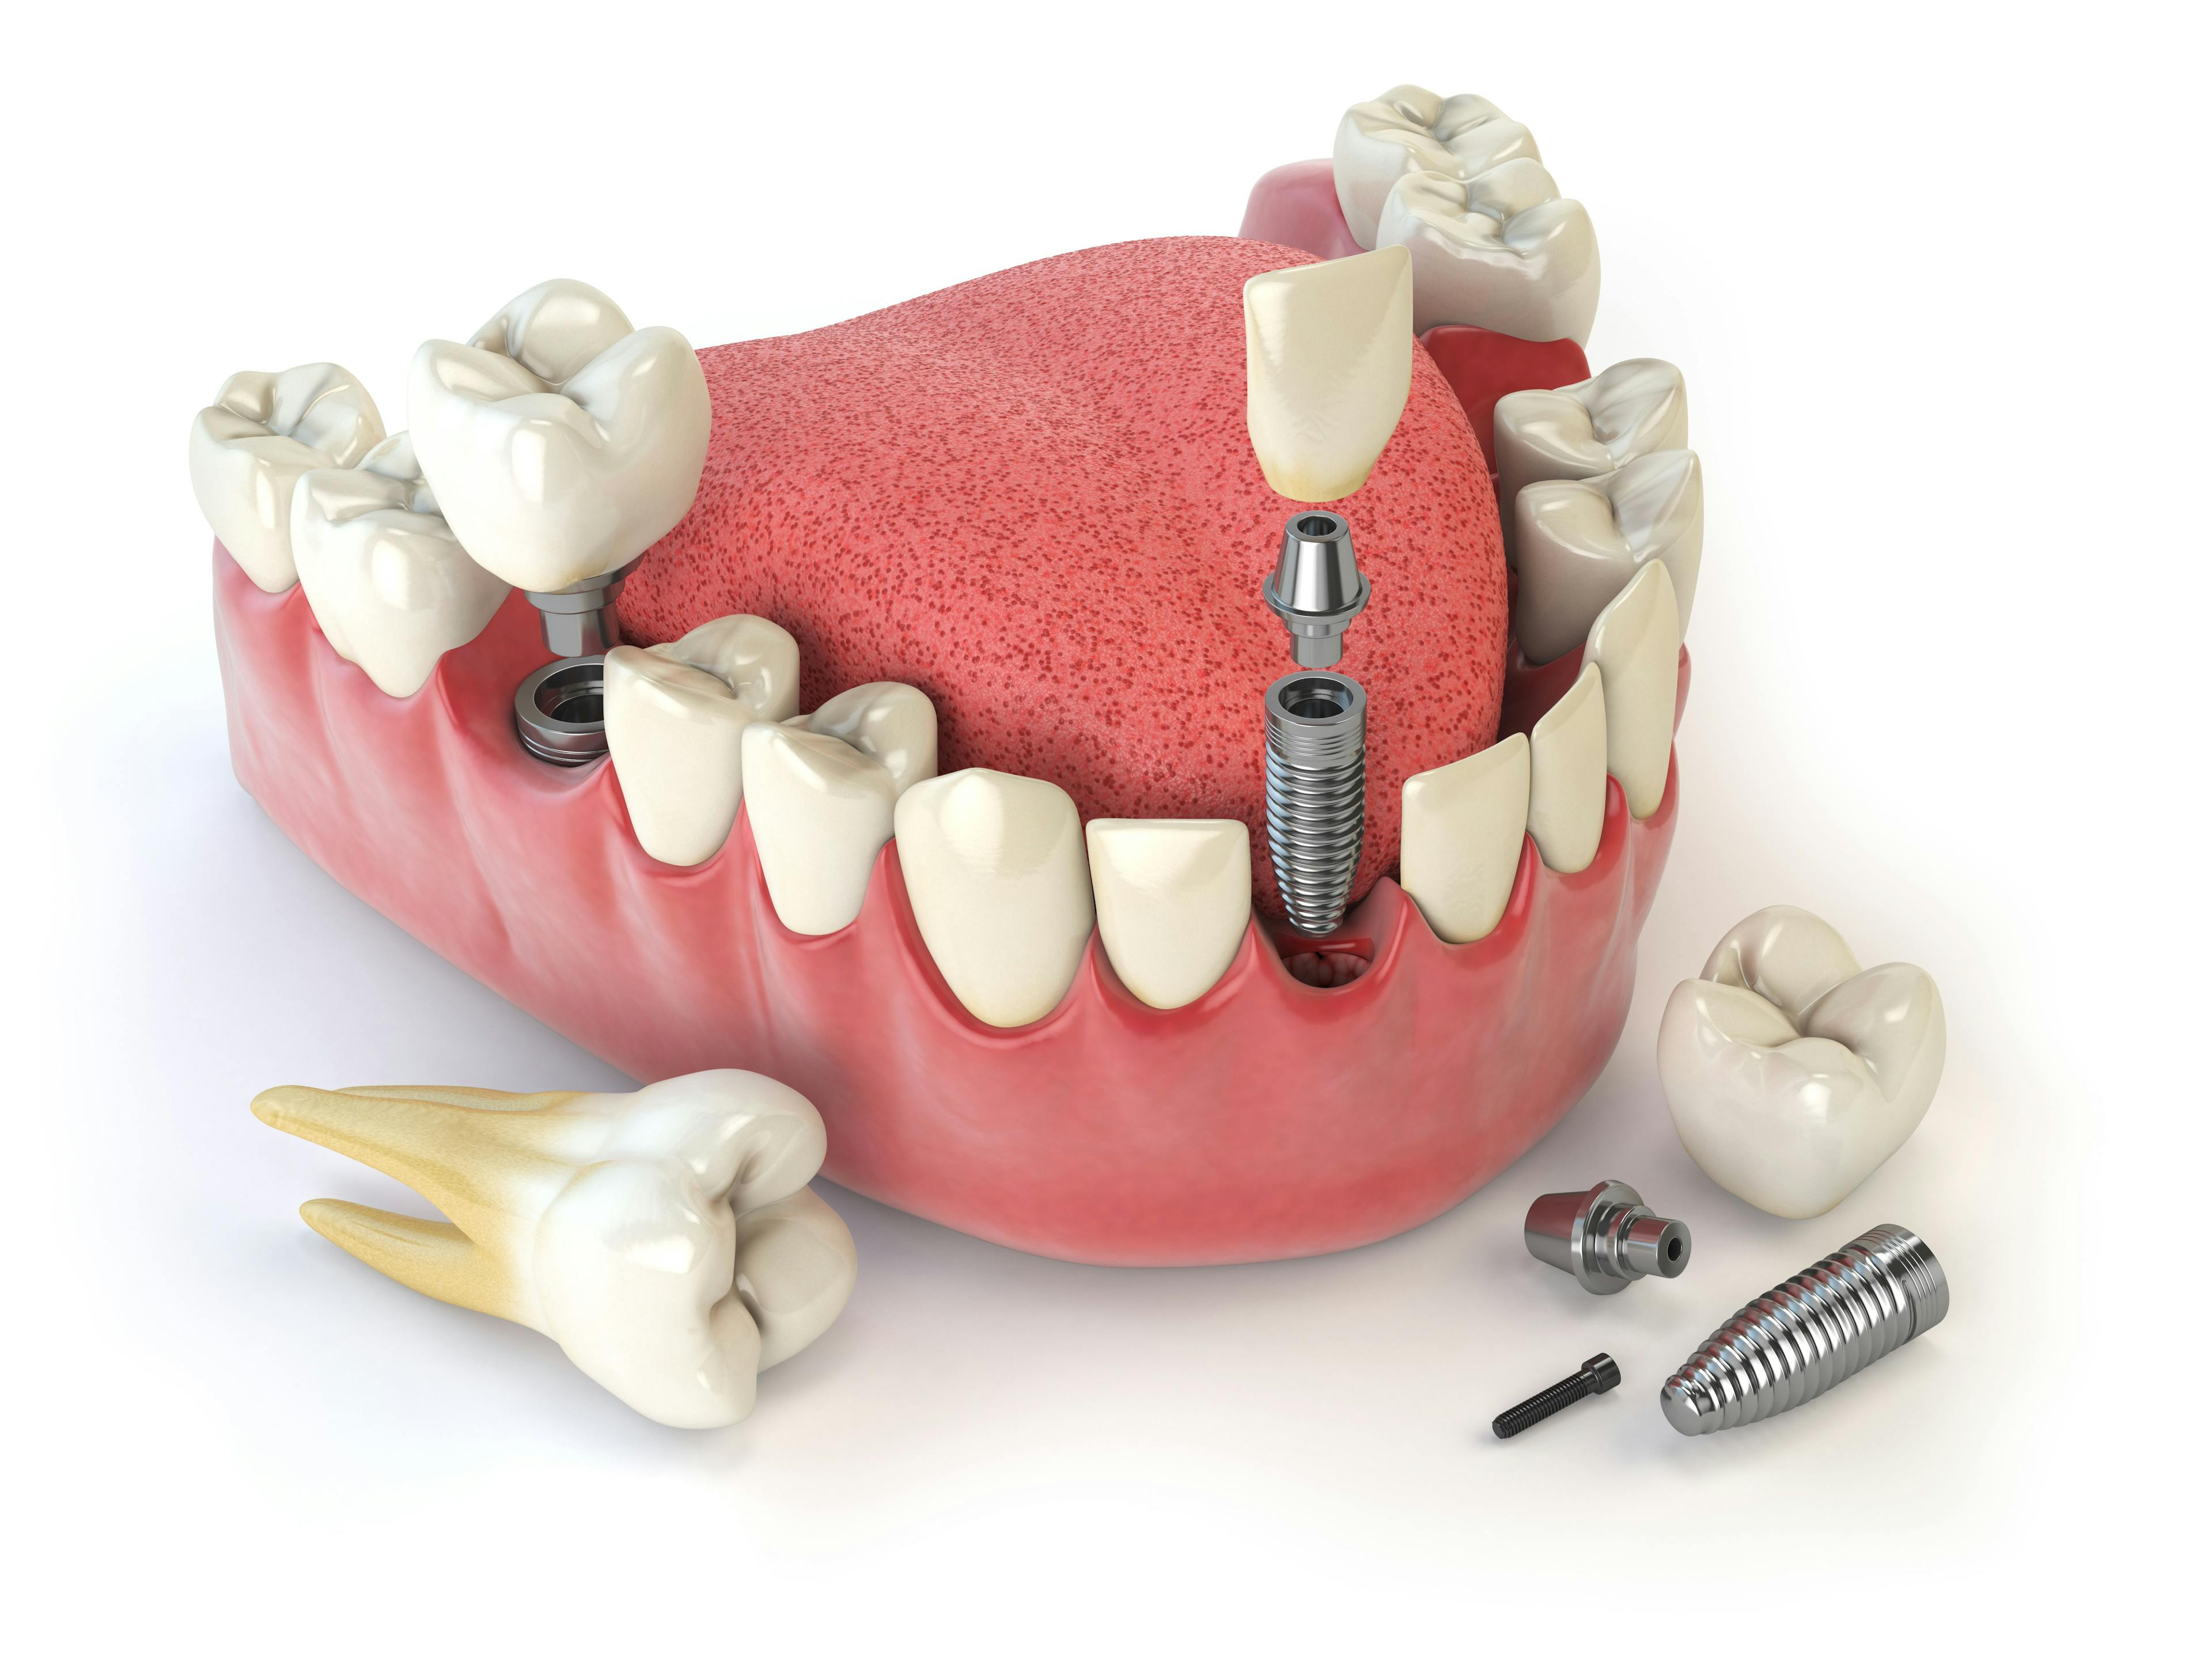 Dental implants - Maksym Yemelyanov / stock.adobe.com